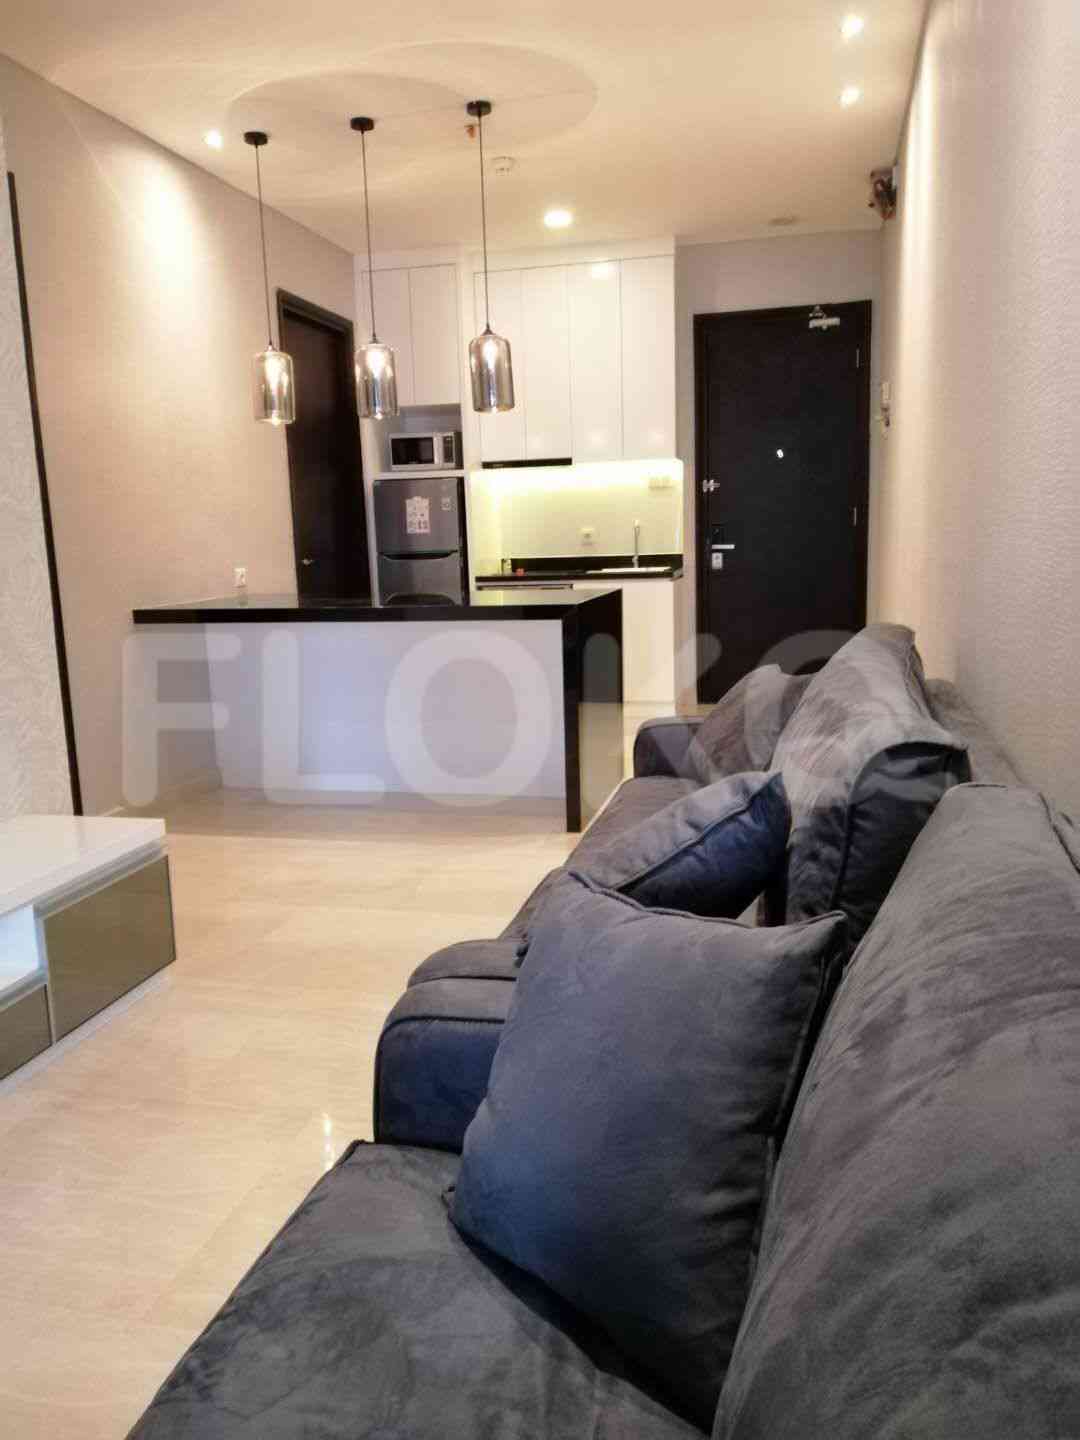 2 Bedroom on 18th Floor for Rent in Sudirman Suites Jakarta - fsu69e 13